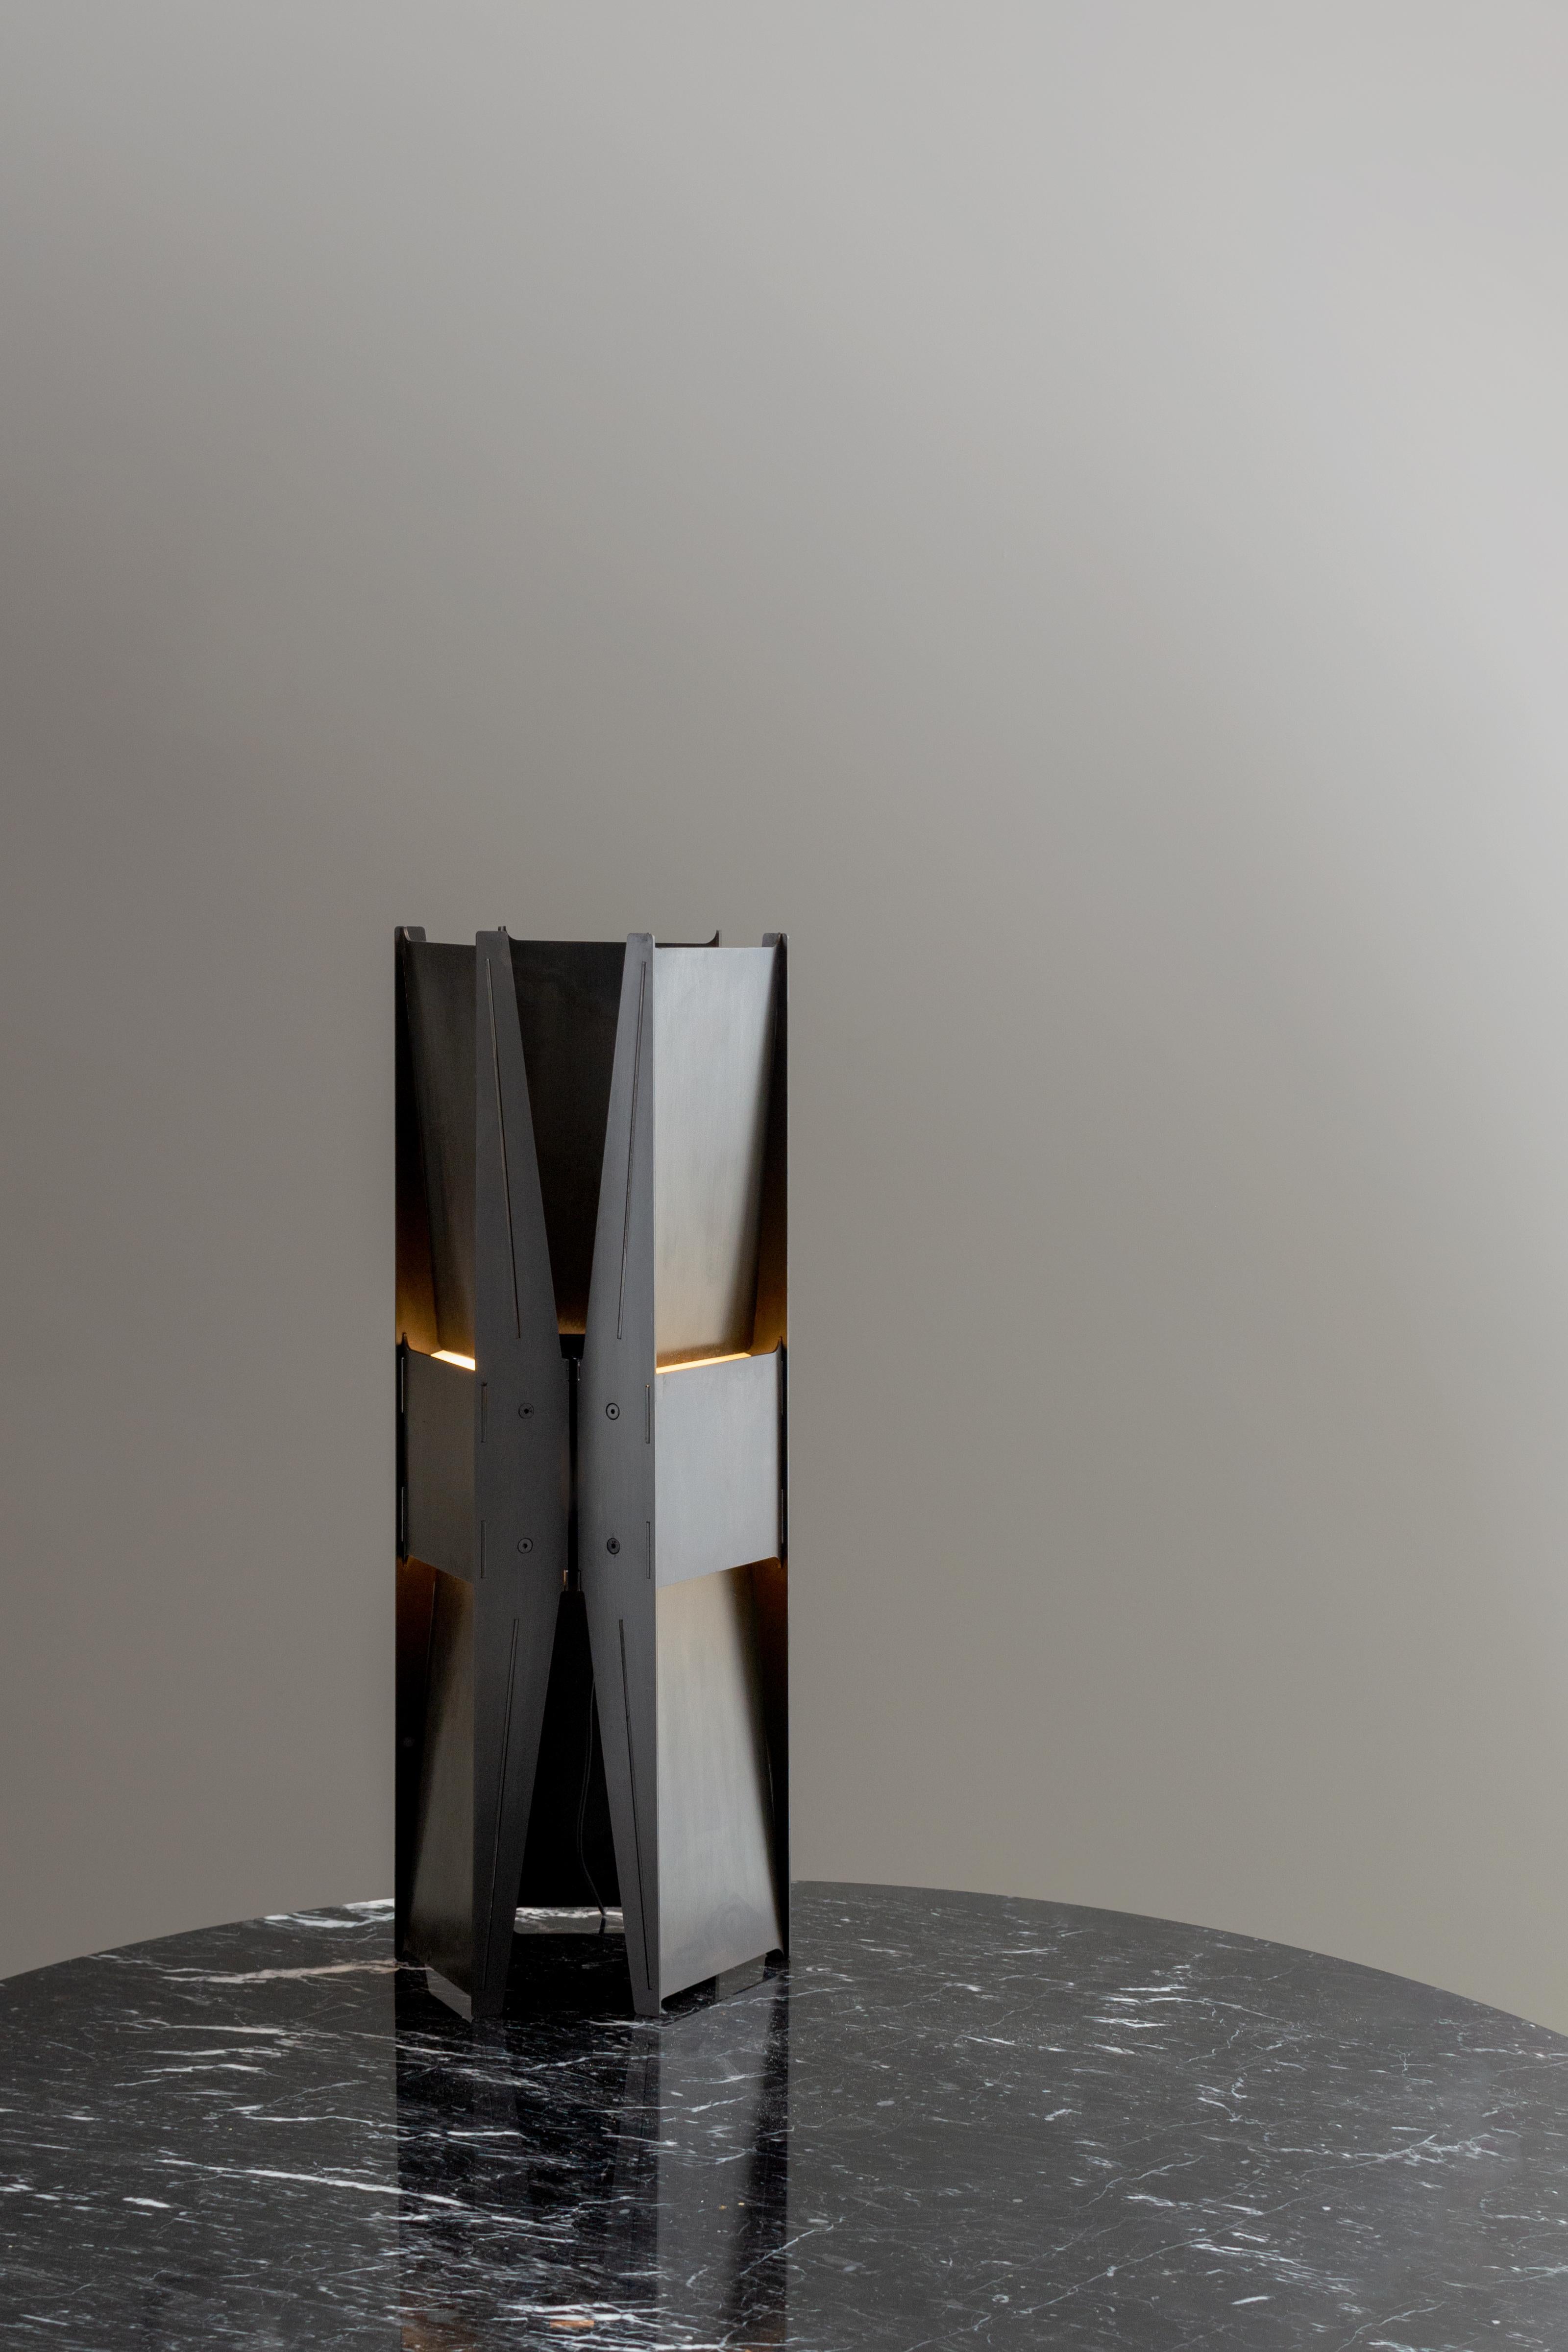 Lampe de table contemporaine 'Vector'

Modèle présenté : Steelele noir

DIMENSIONS
H. 58 cm x D. 22cm / H. 22.75